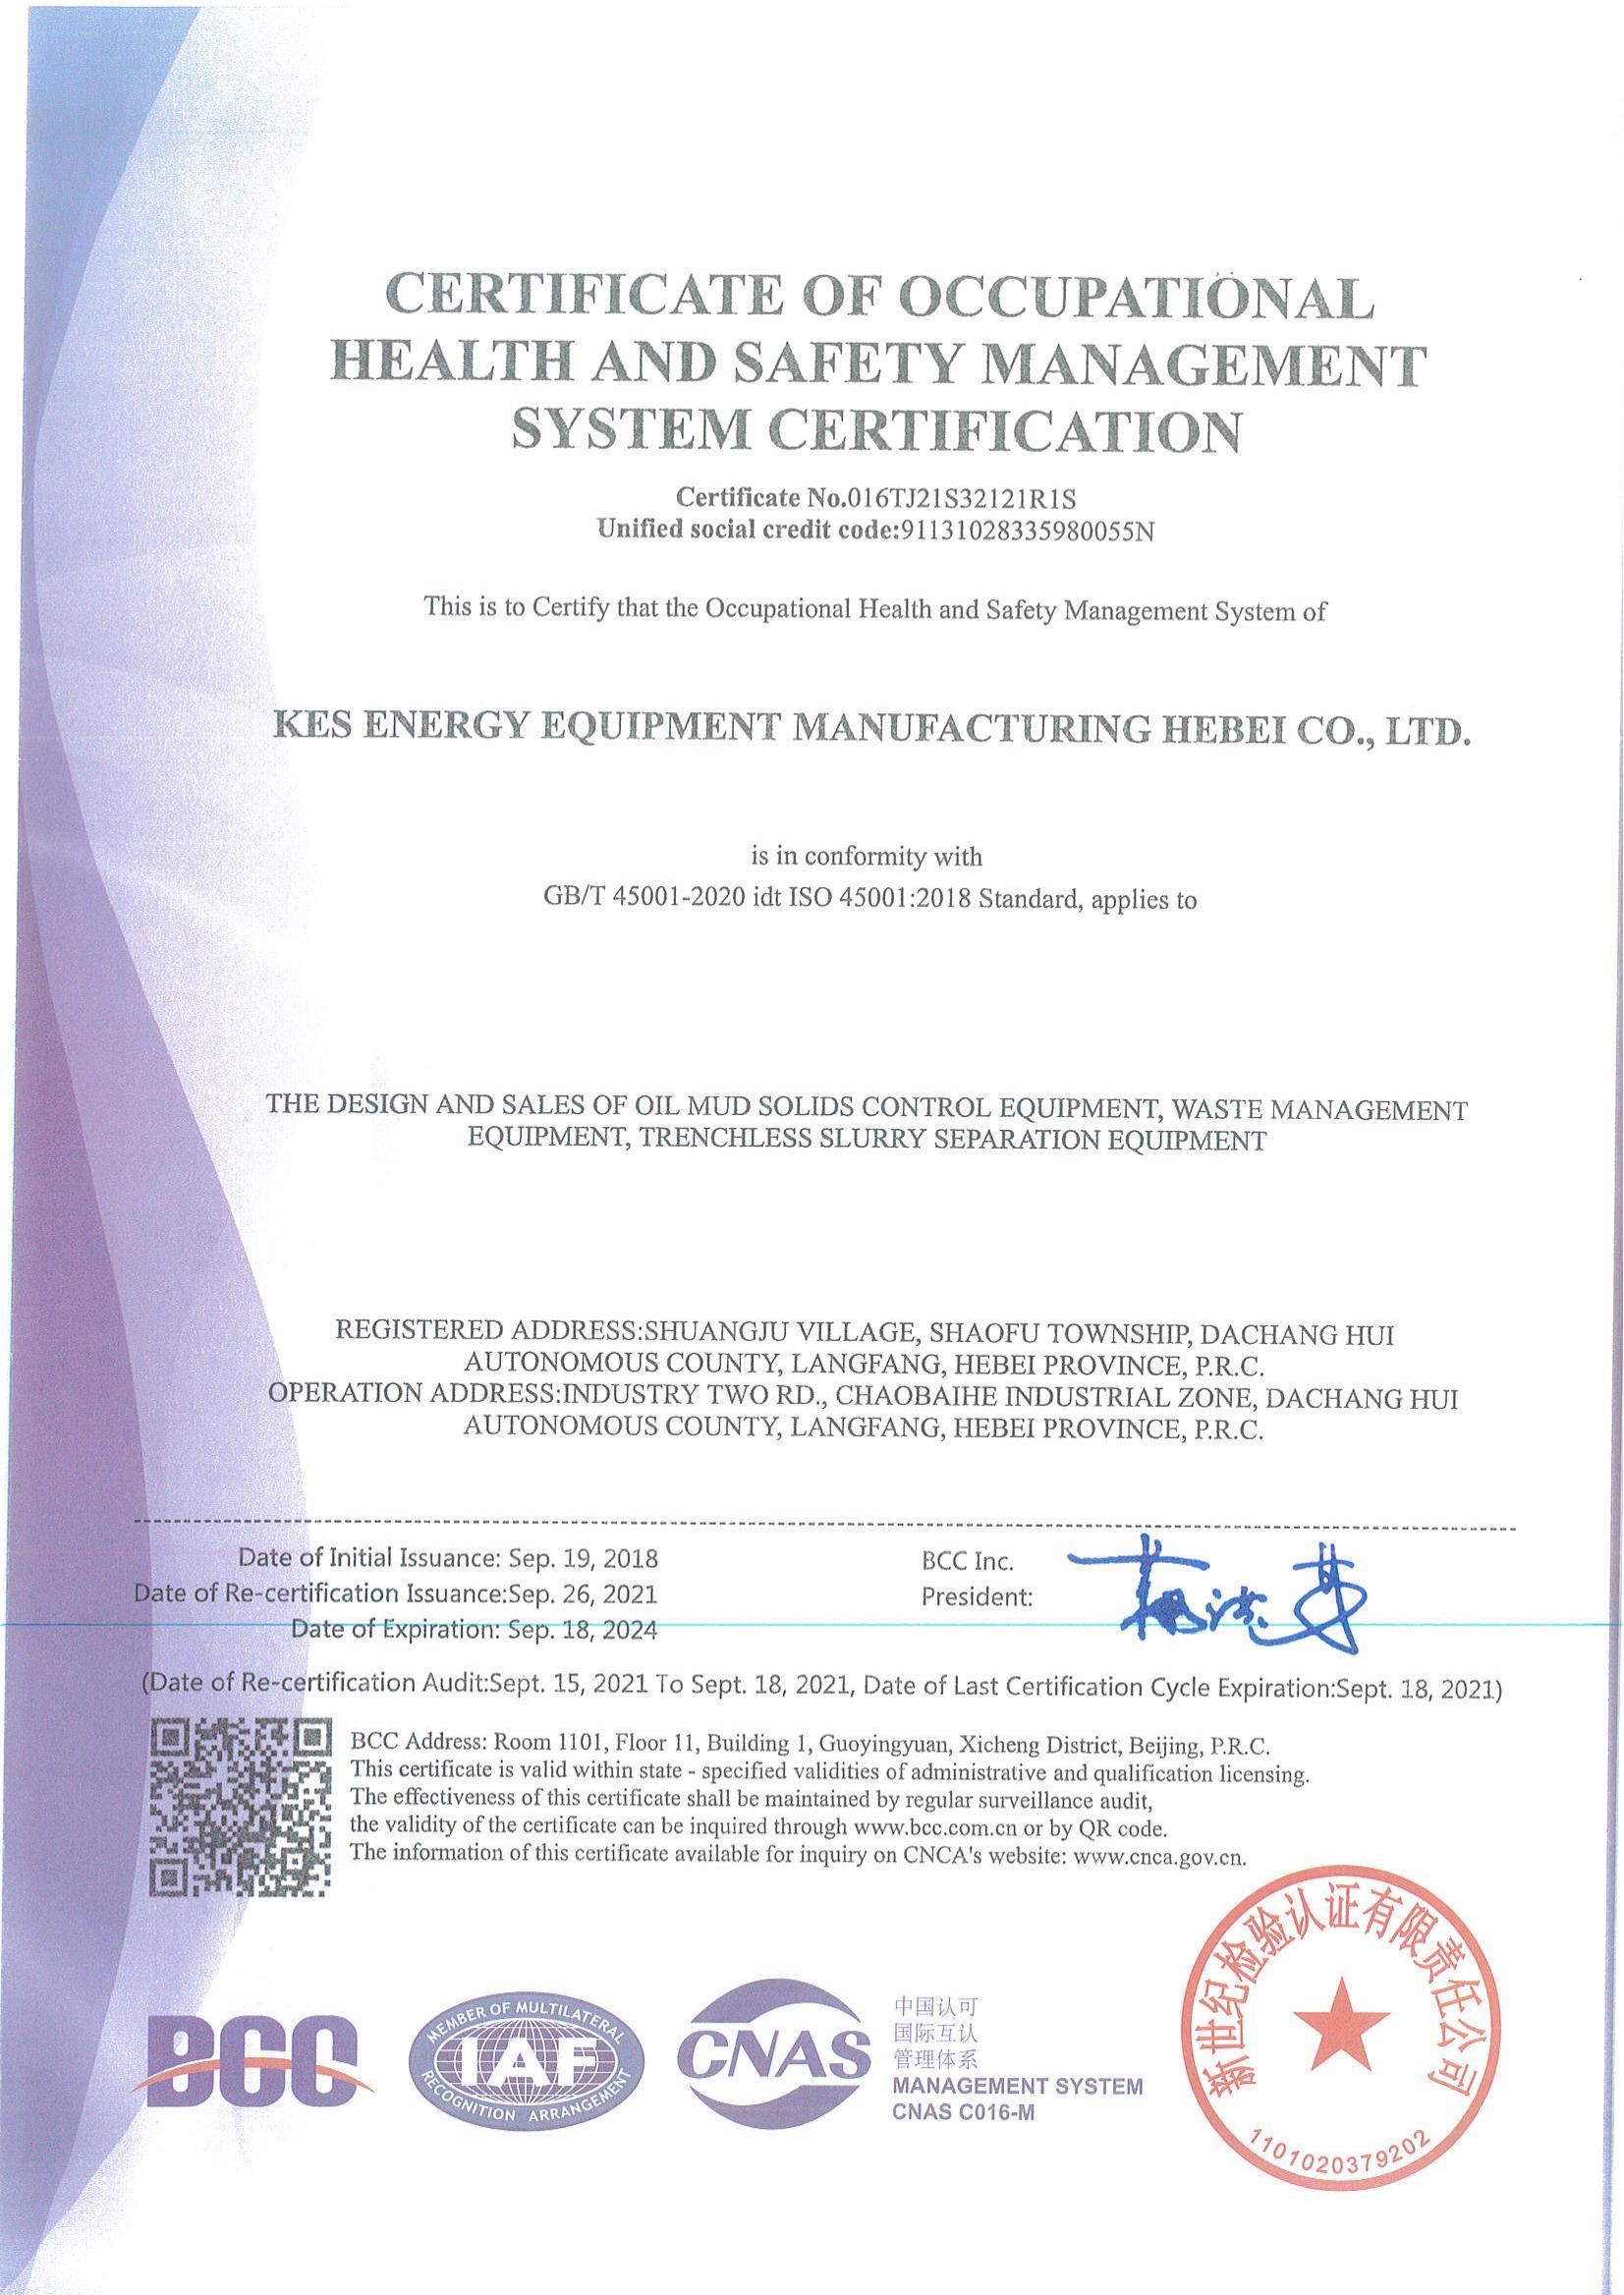 职业健康安全管理体系认证证书-英文版